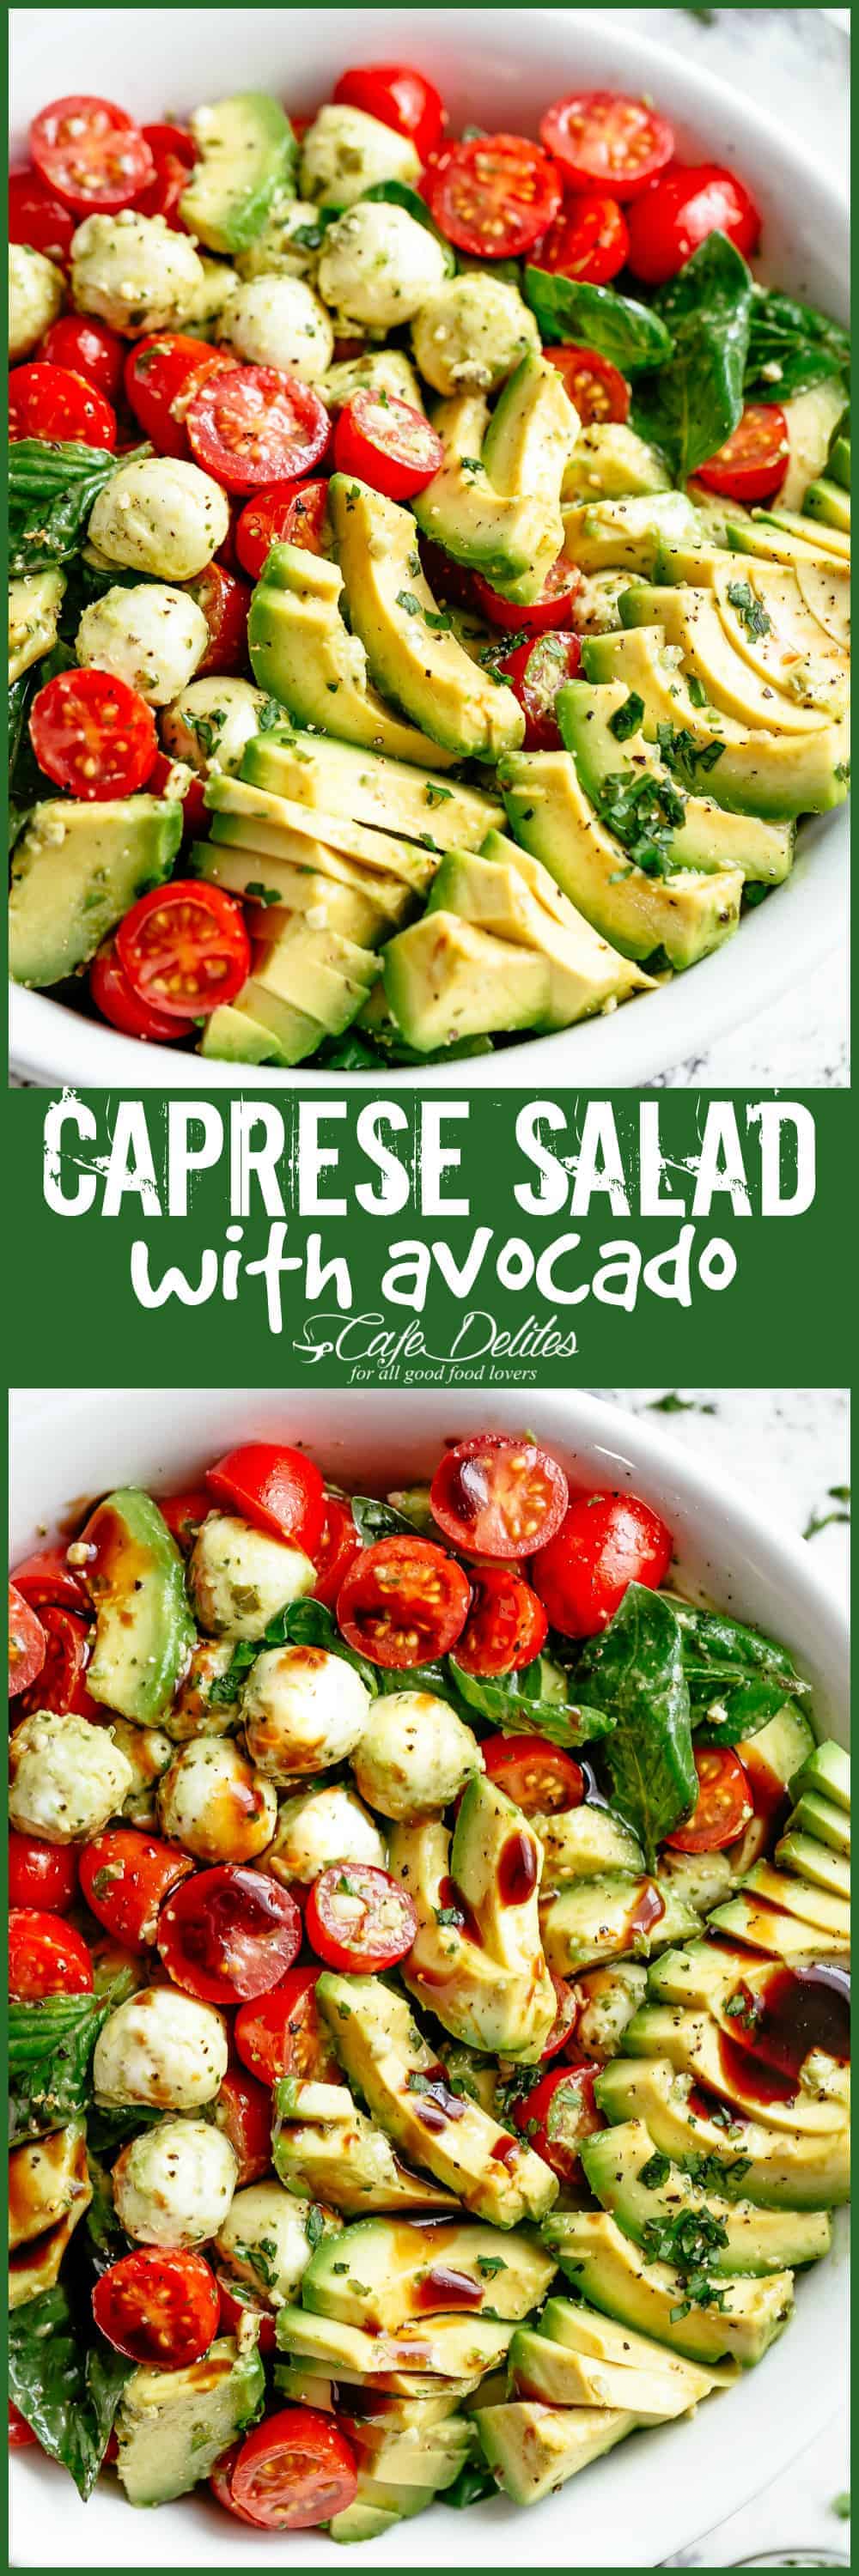 Caprese Salad with Avocado - Cafe Delites